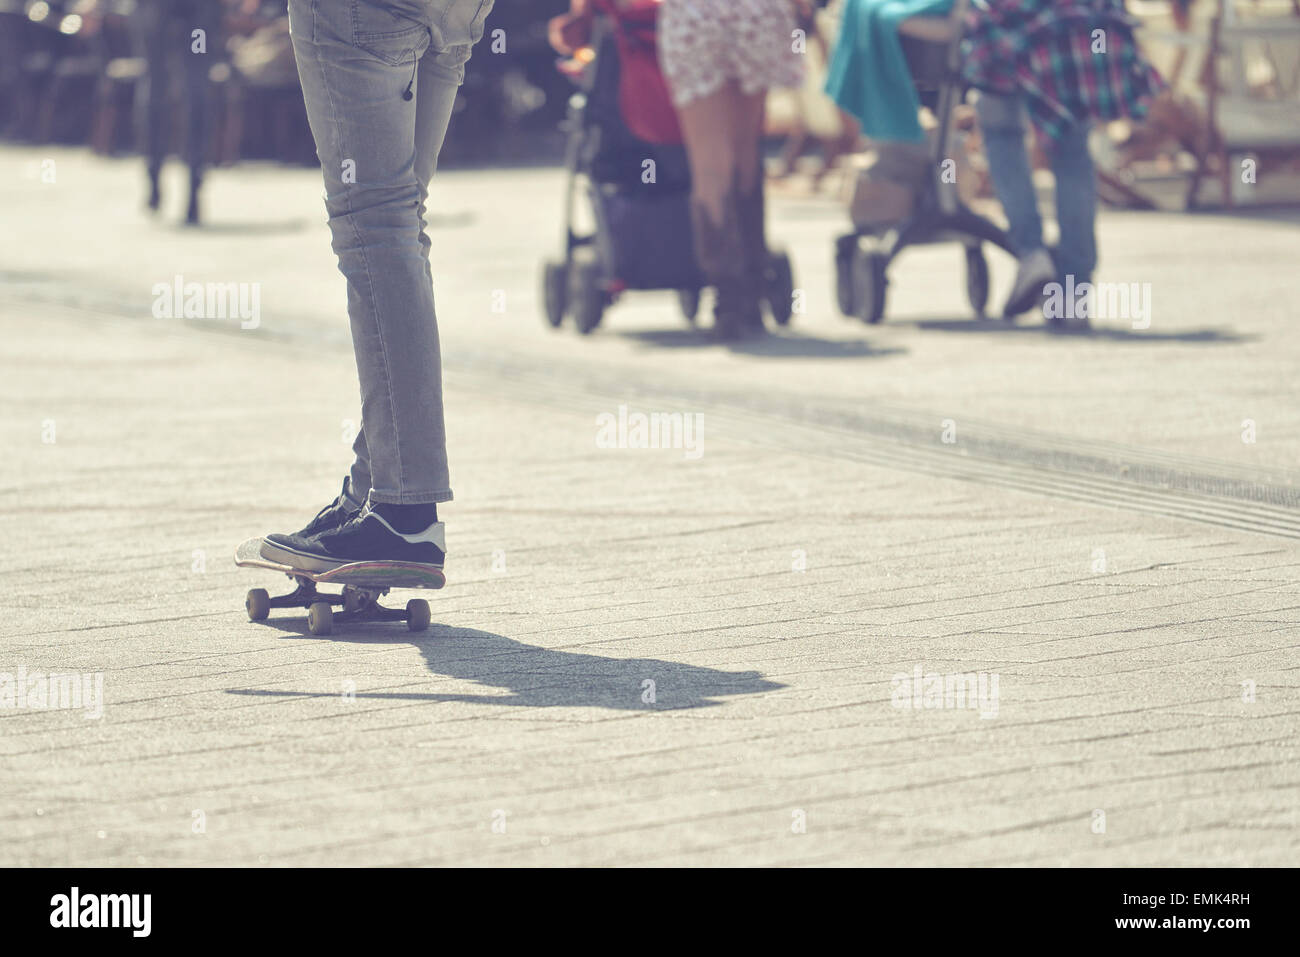 Macho joven skateboarder Skateboard Equitación en pavimento de las calles de la ciudad, el enfoque selectivo de la imagen en tonos de proceso cruzado Foto de stock